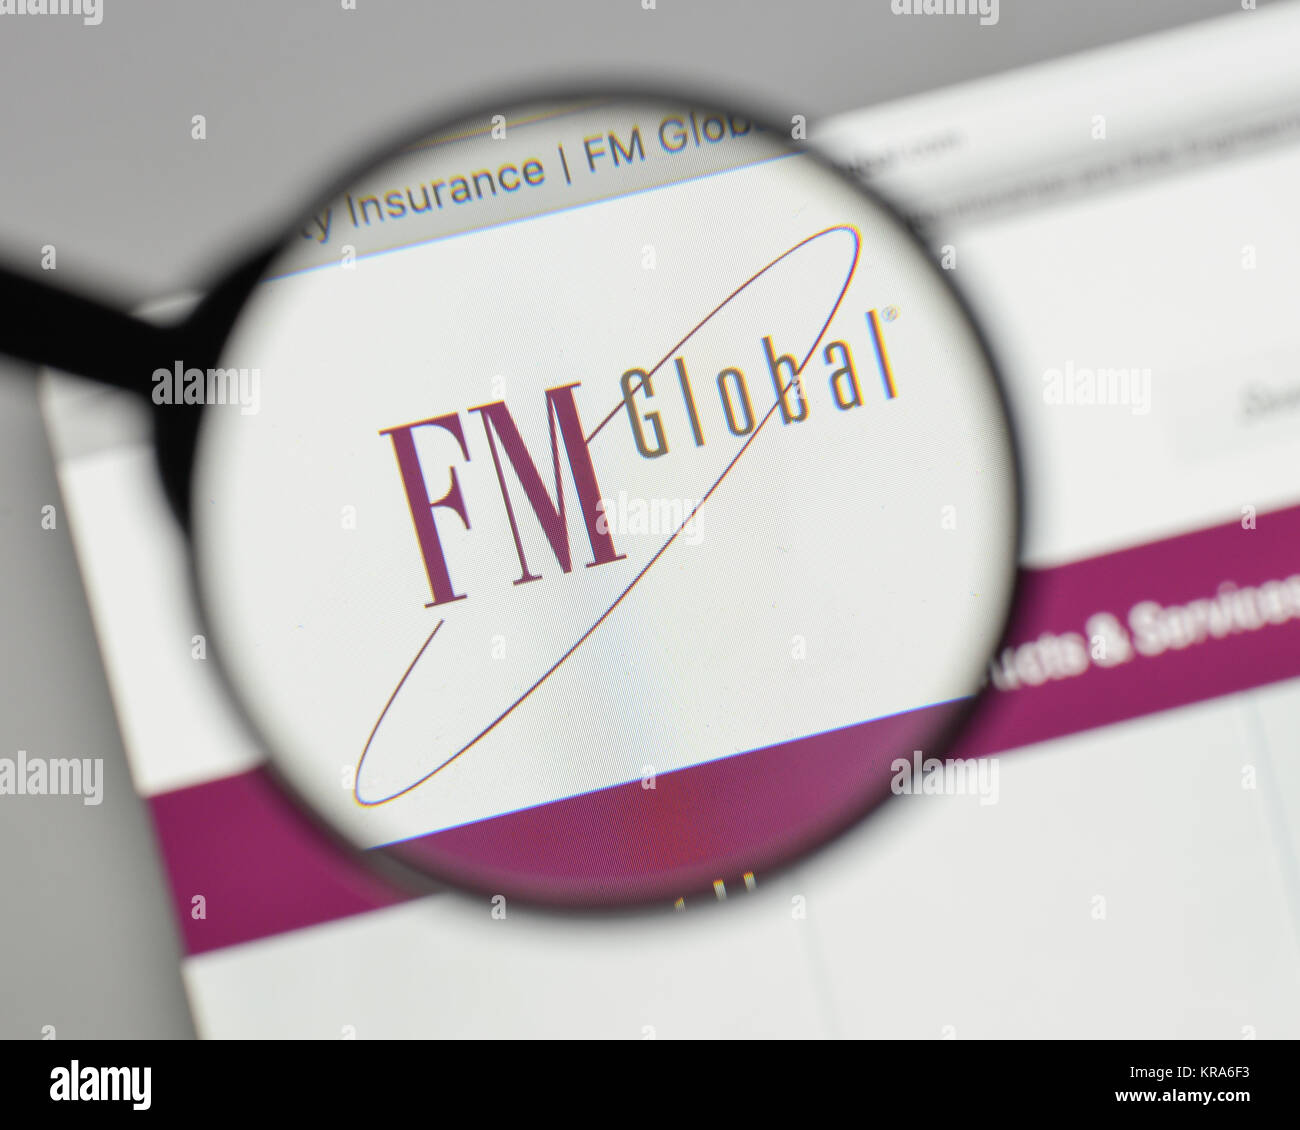 Fm global logo Banque de photographies et d'images à haute résolution -  Alamy